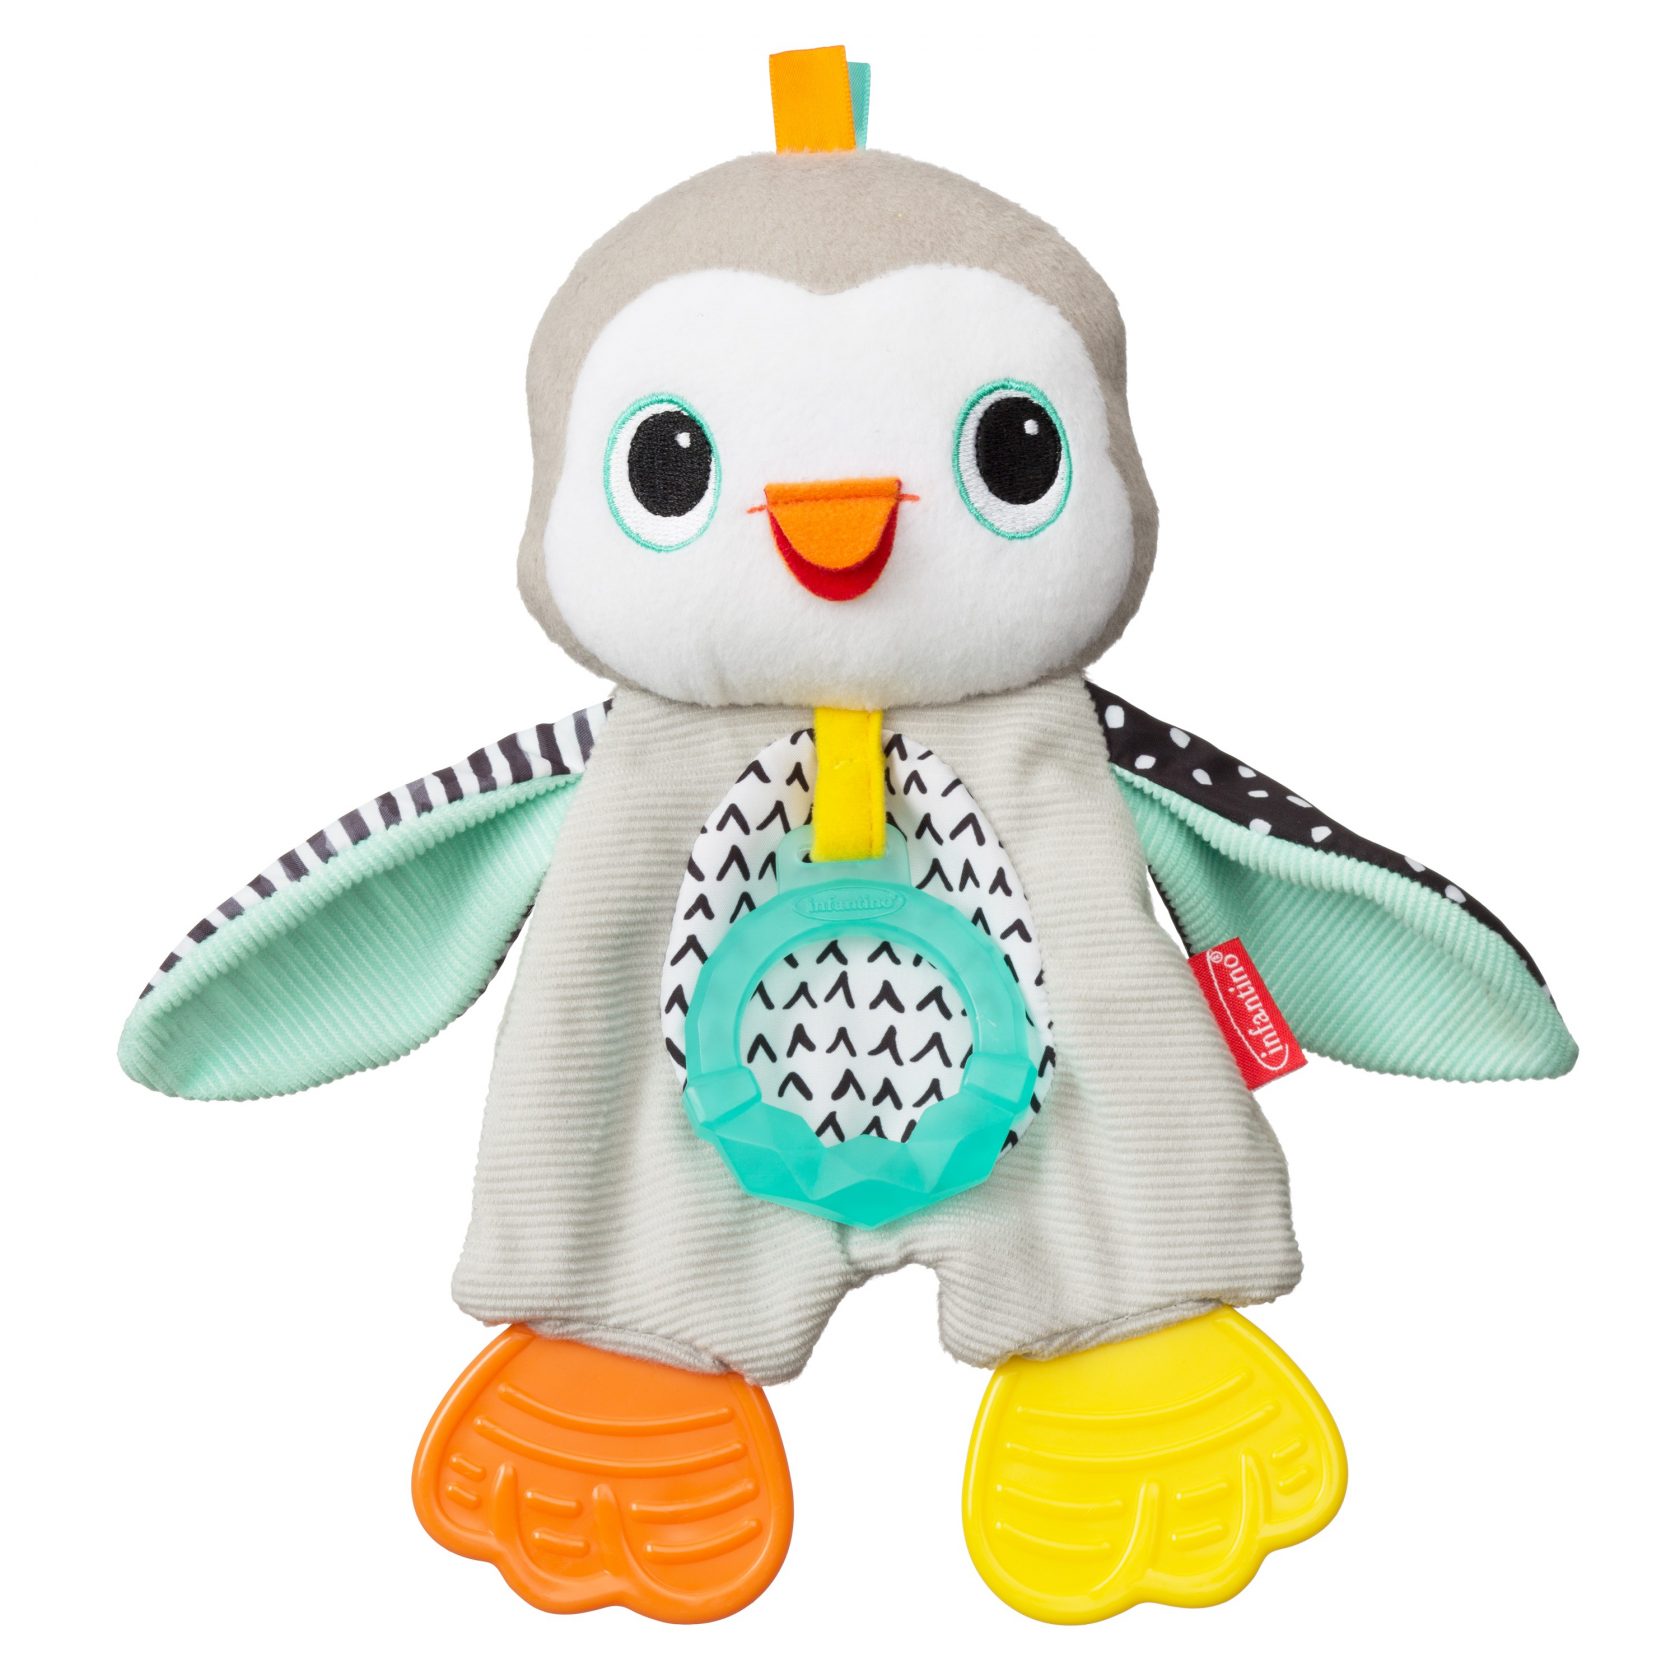 παιχνιδιάρικος, υφασμάτινος πιγκουίνος με πολύχρωμα φτερά με έντονα χρώματα, με ύφασμα αφής και 3 μασητικά. Για παιδιά 0+ μηνών